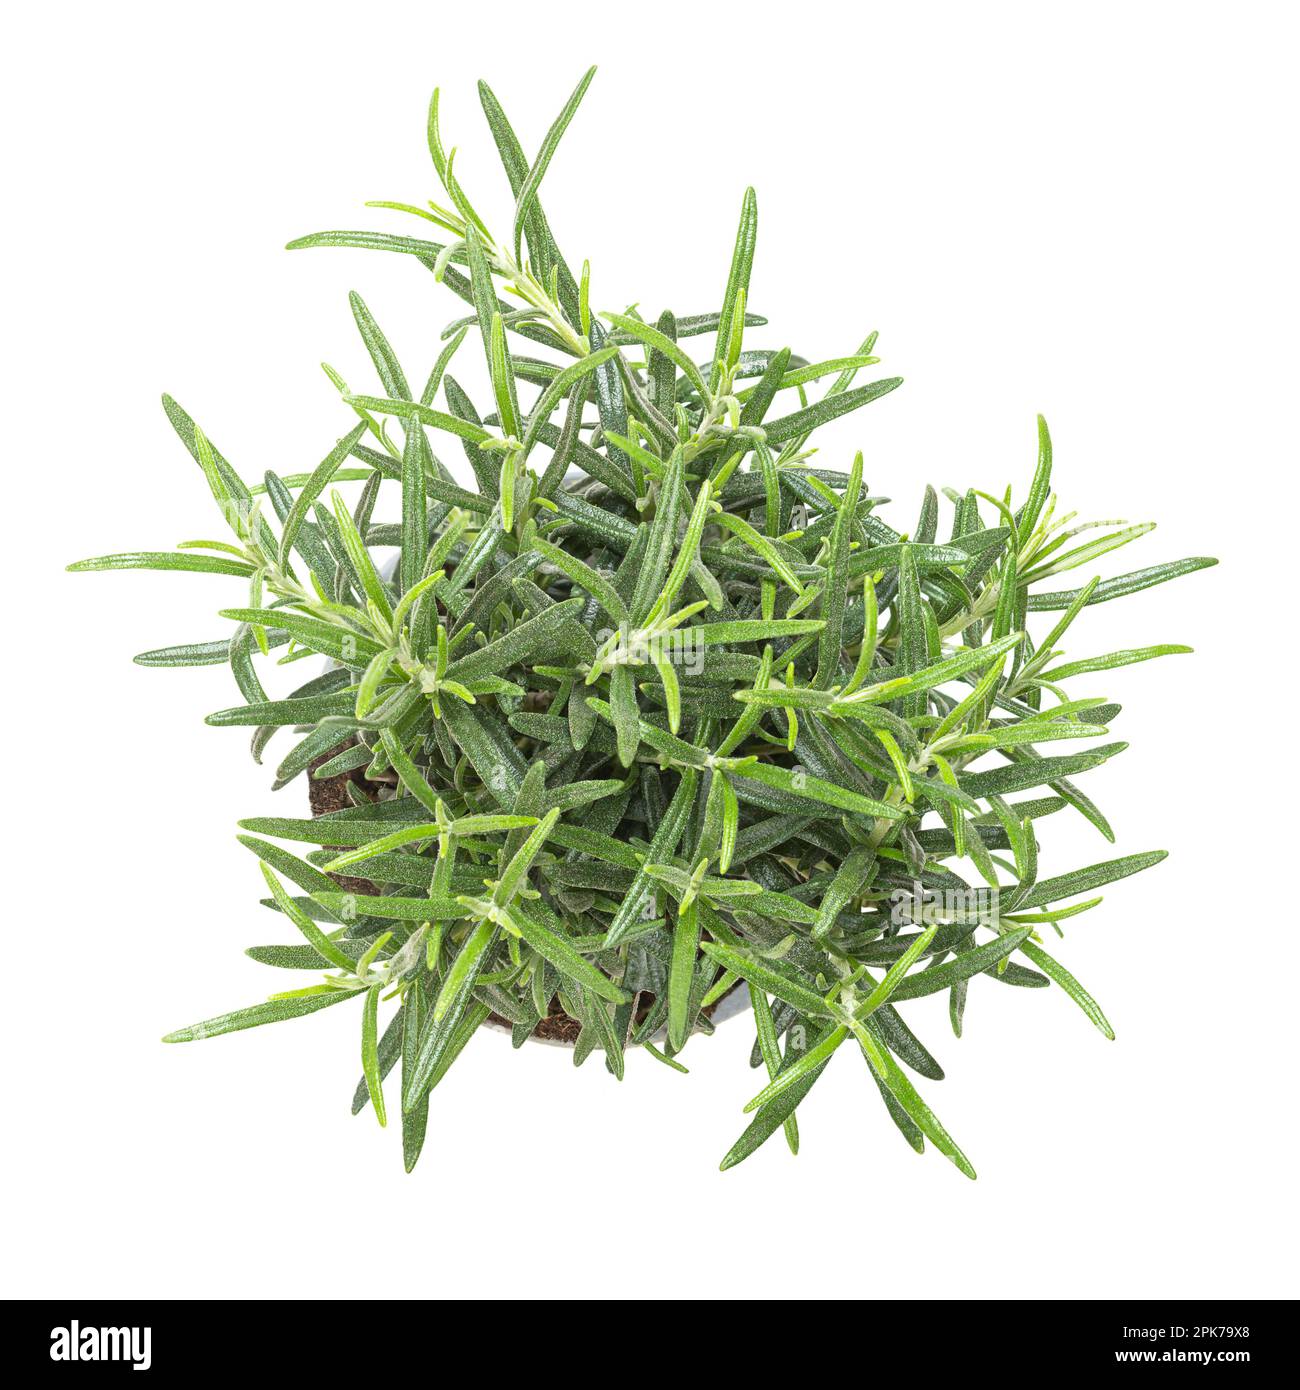 Rosmarino, pianta giovane in vaso di plastica grigia. Salvia rosmarinus, arbusto aromatico e sempreverde con fragranti foglie verdi aghiformi. Foto Stock